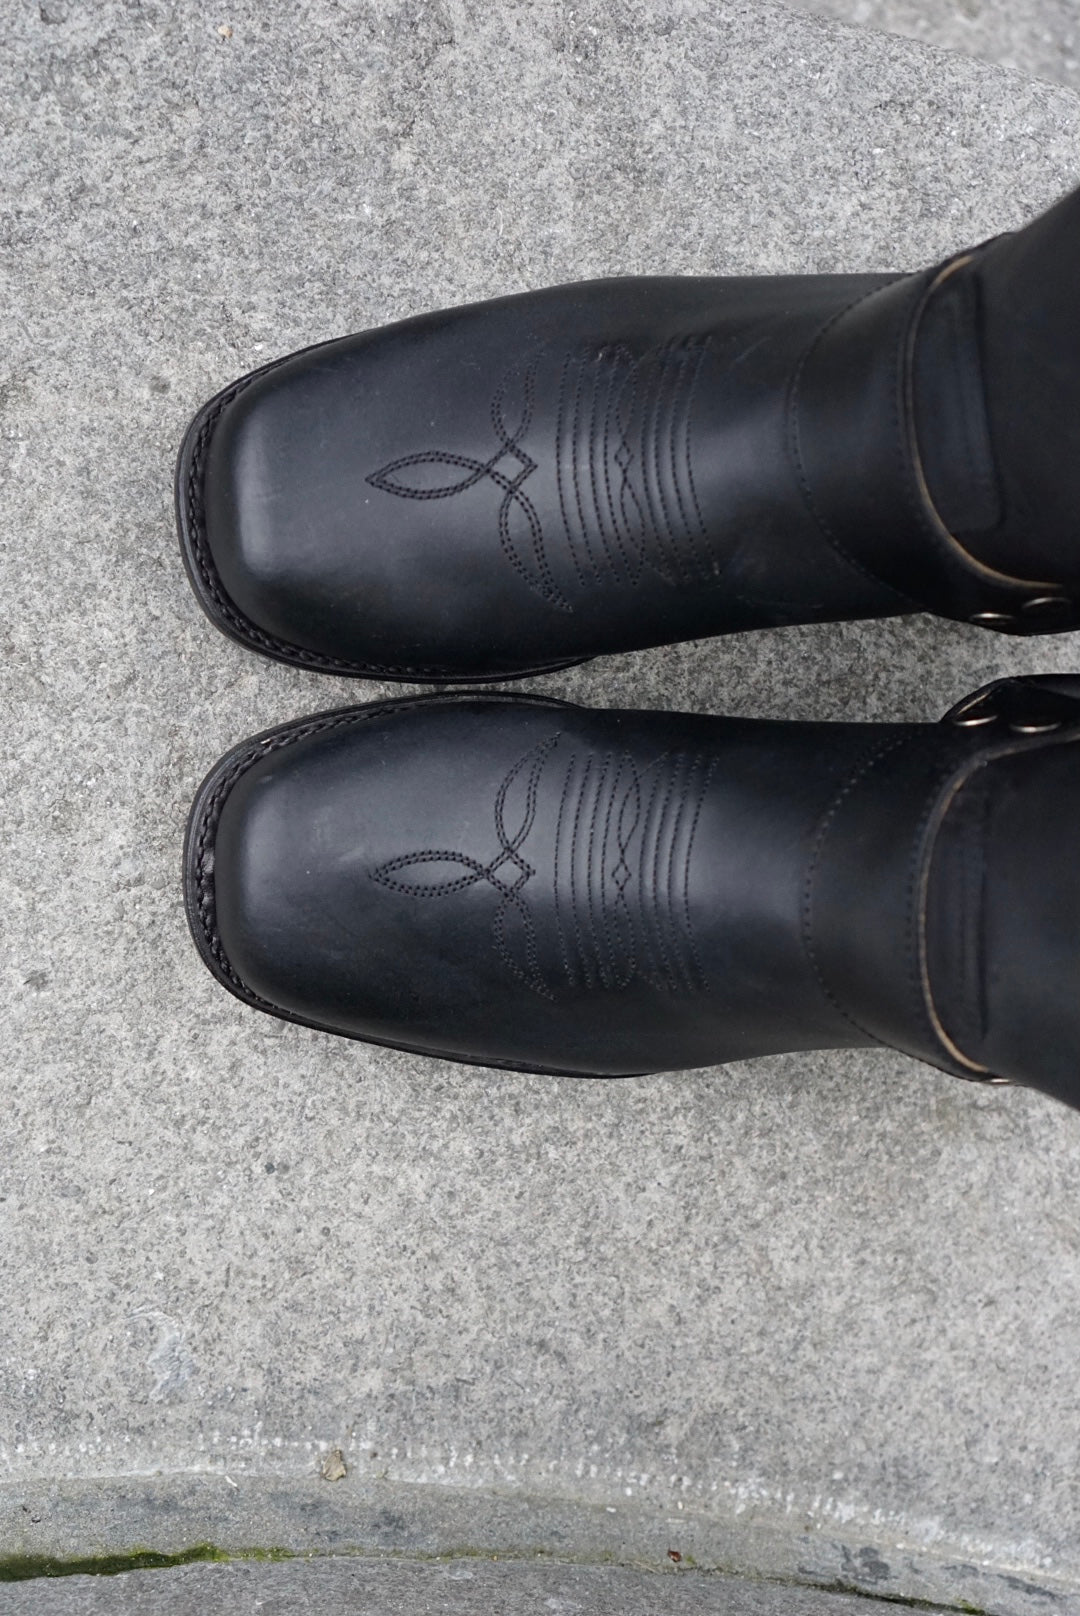 Roel boots - black